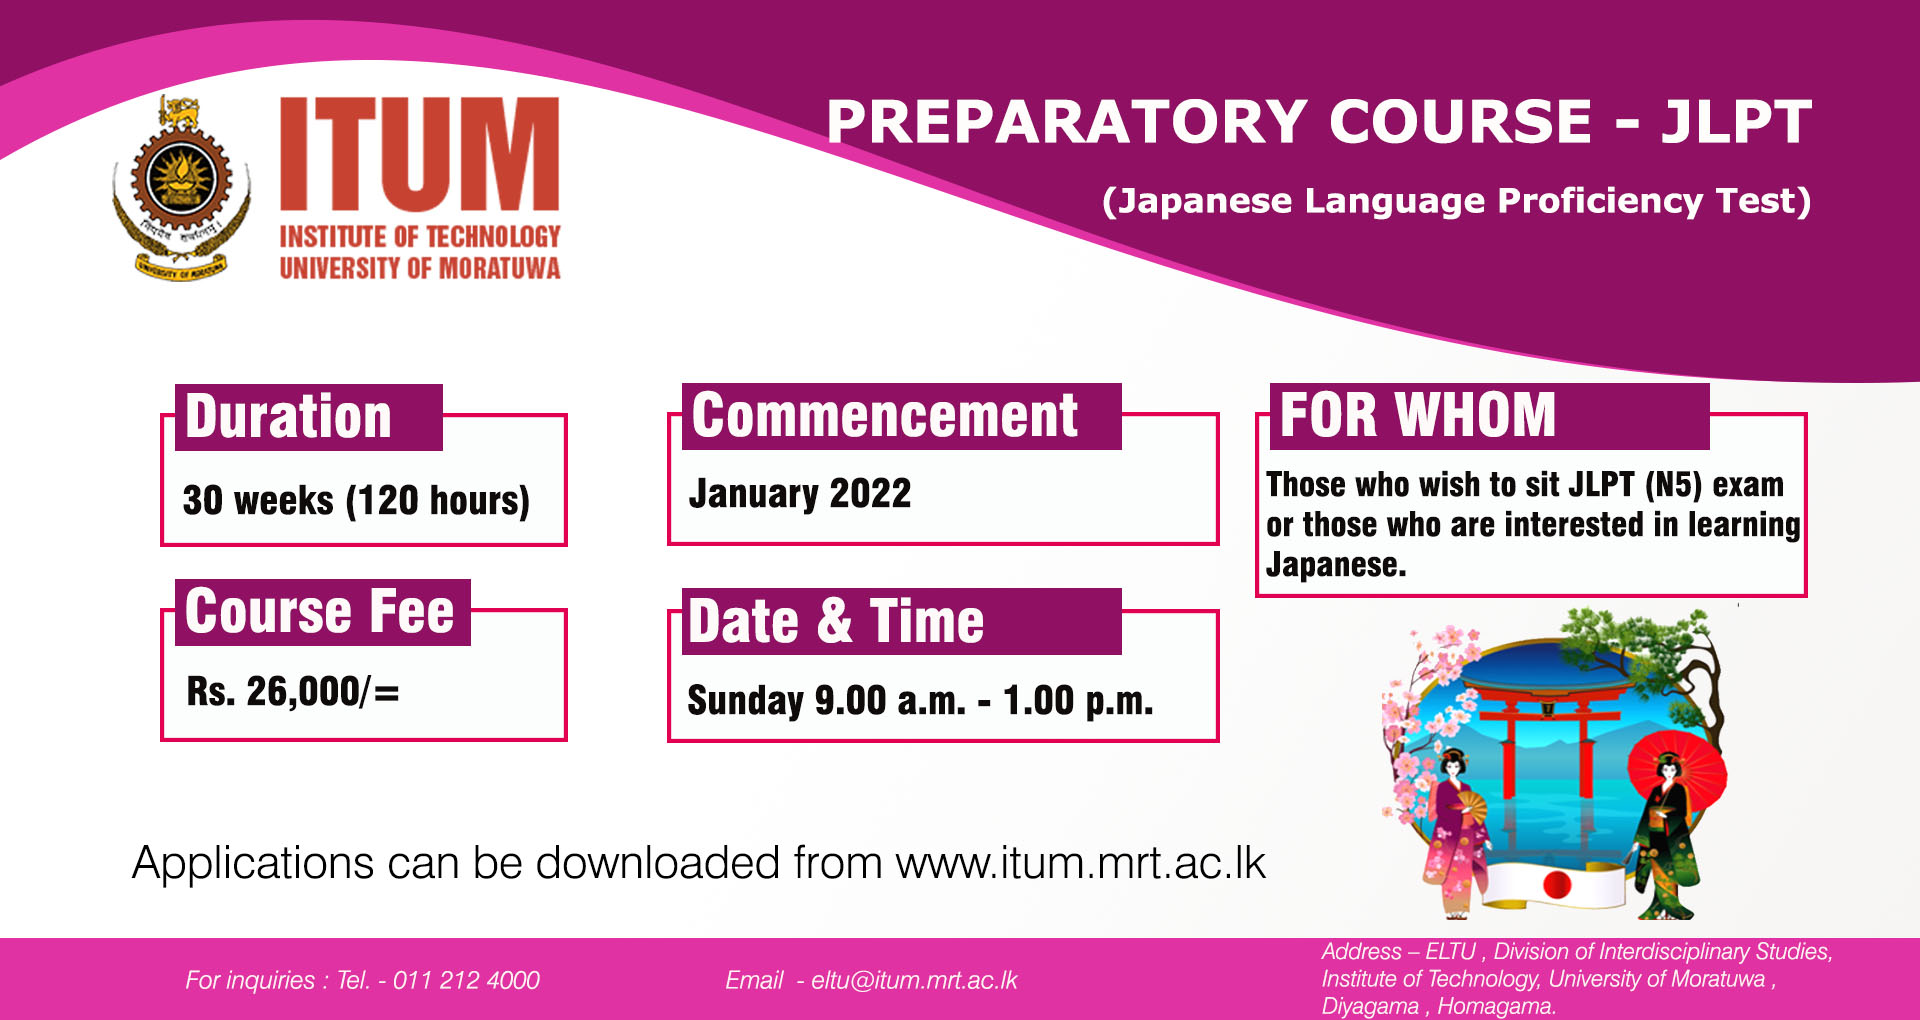 Preparatory Course - JLPT (Japanese Language Proficiency Test)